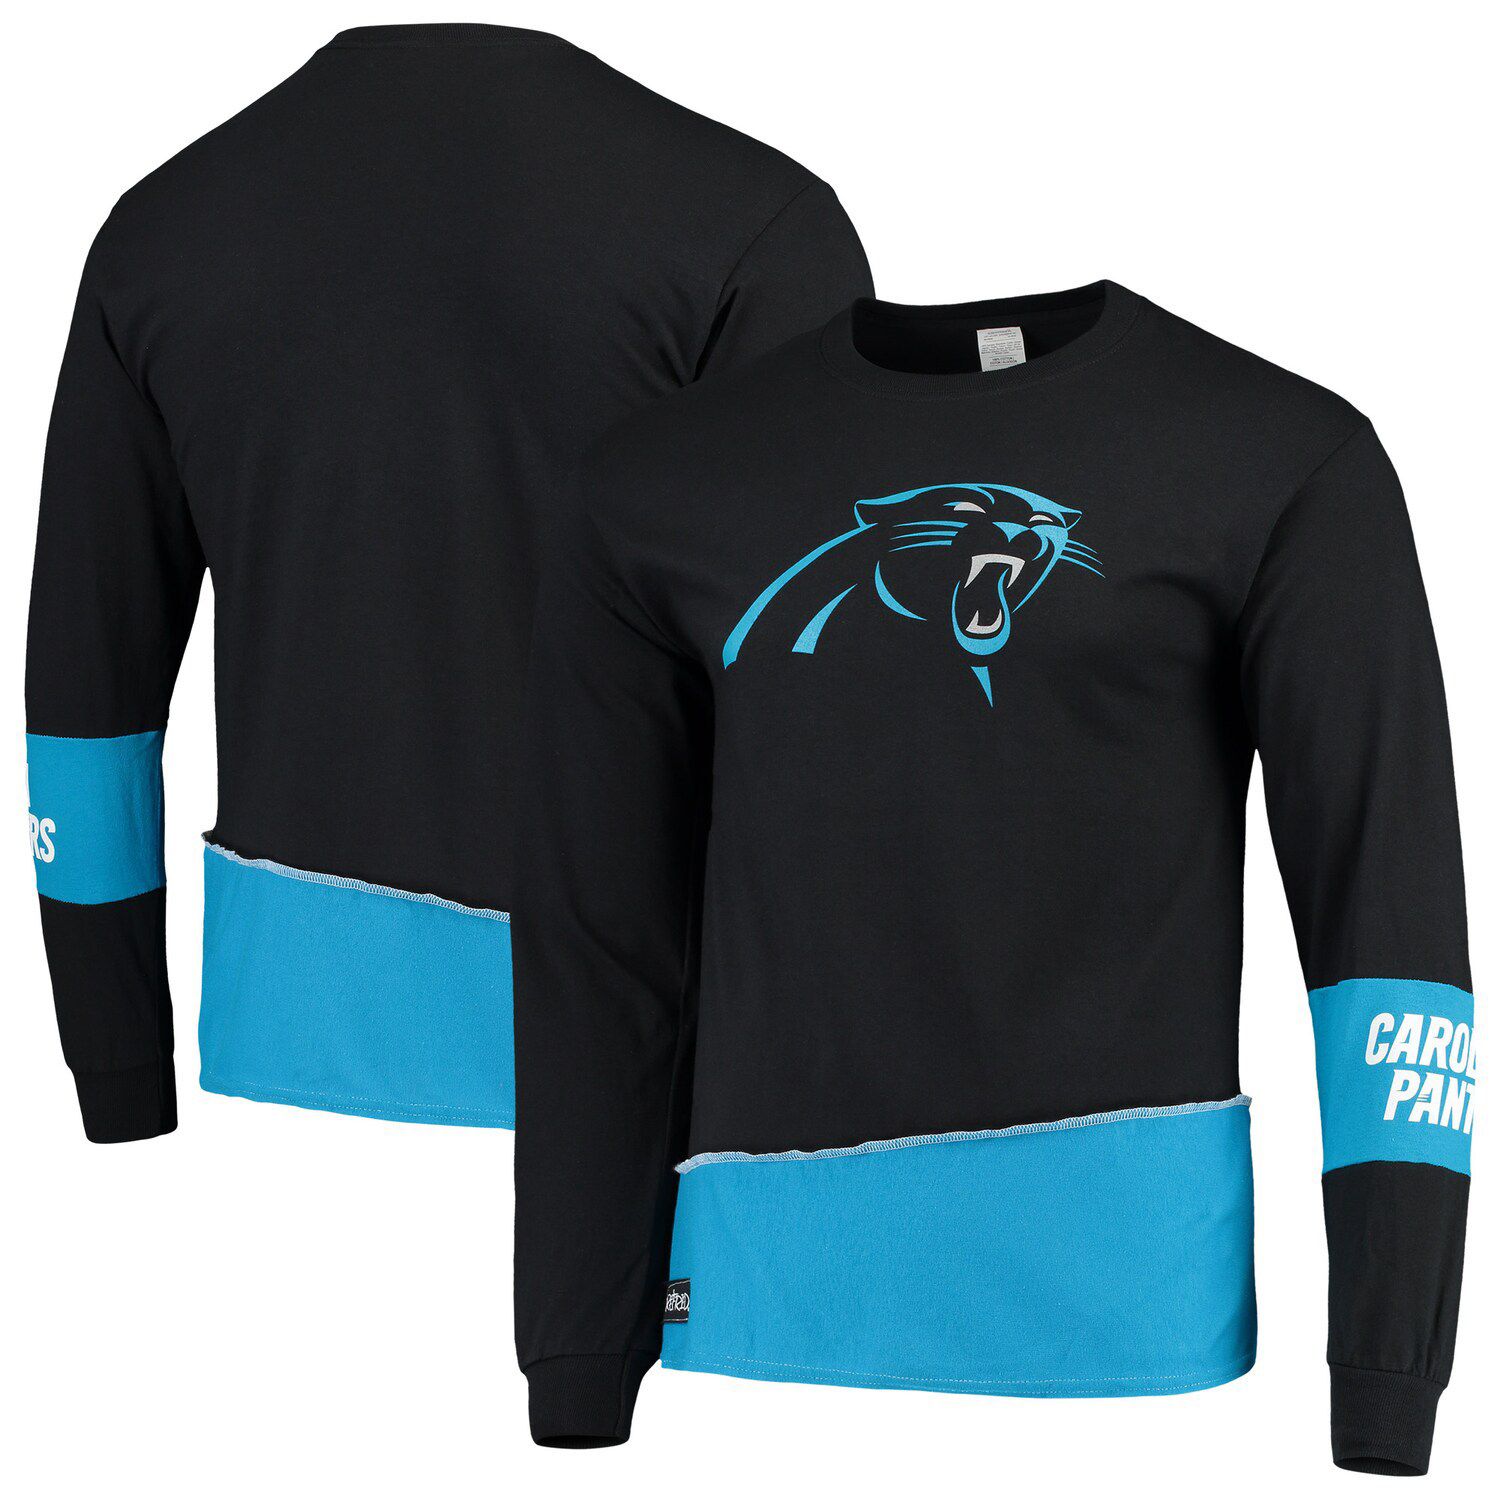 Carolina Panthers apparel